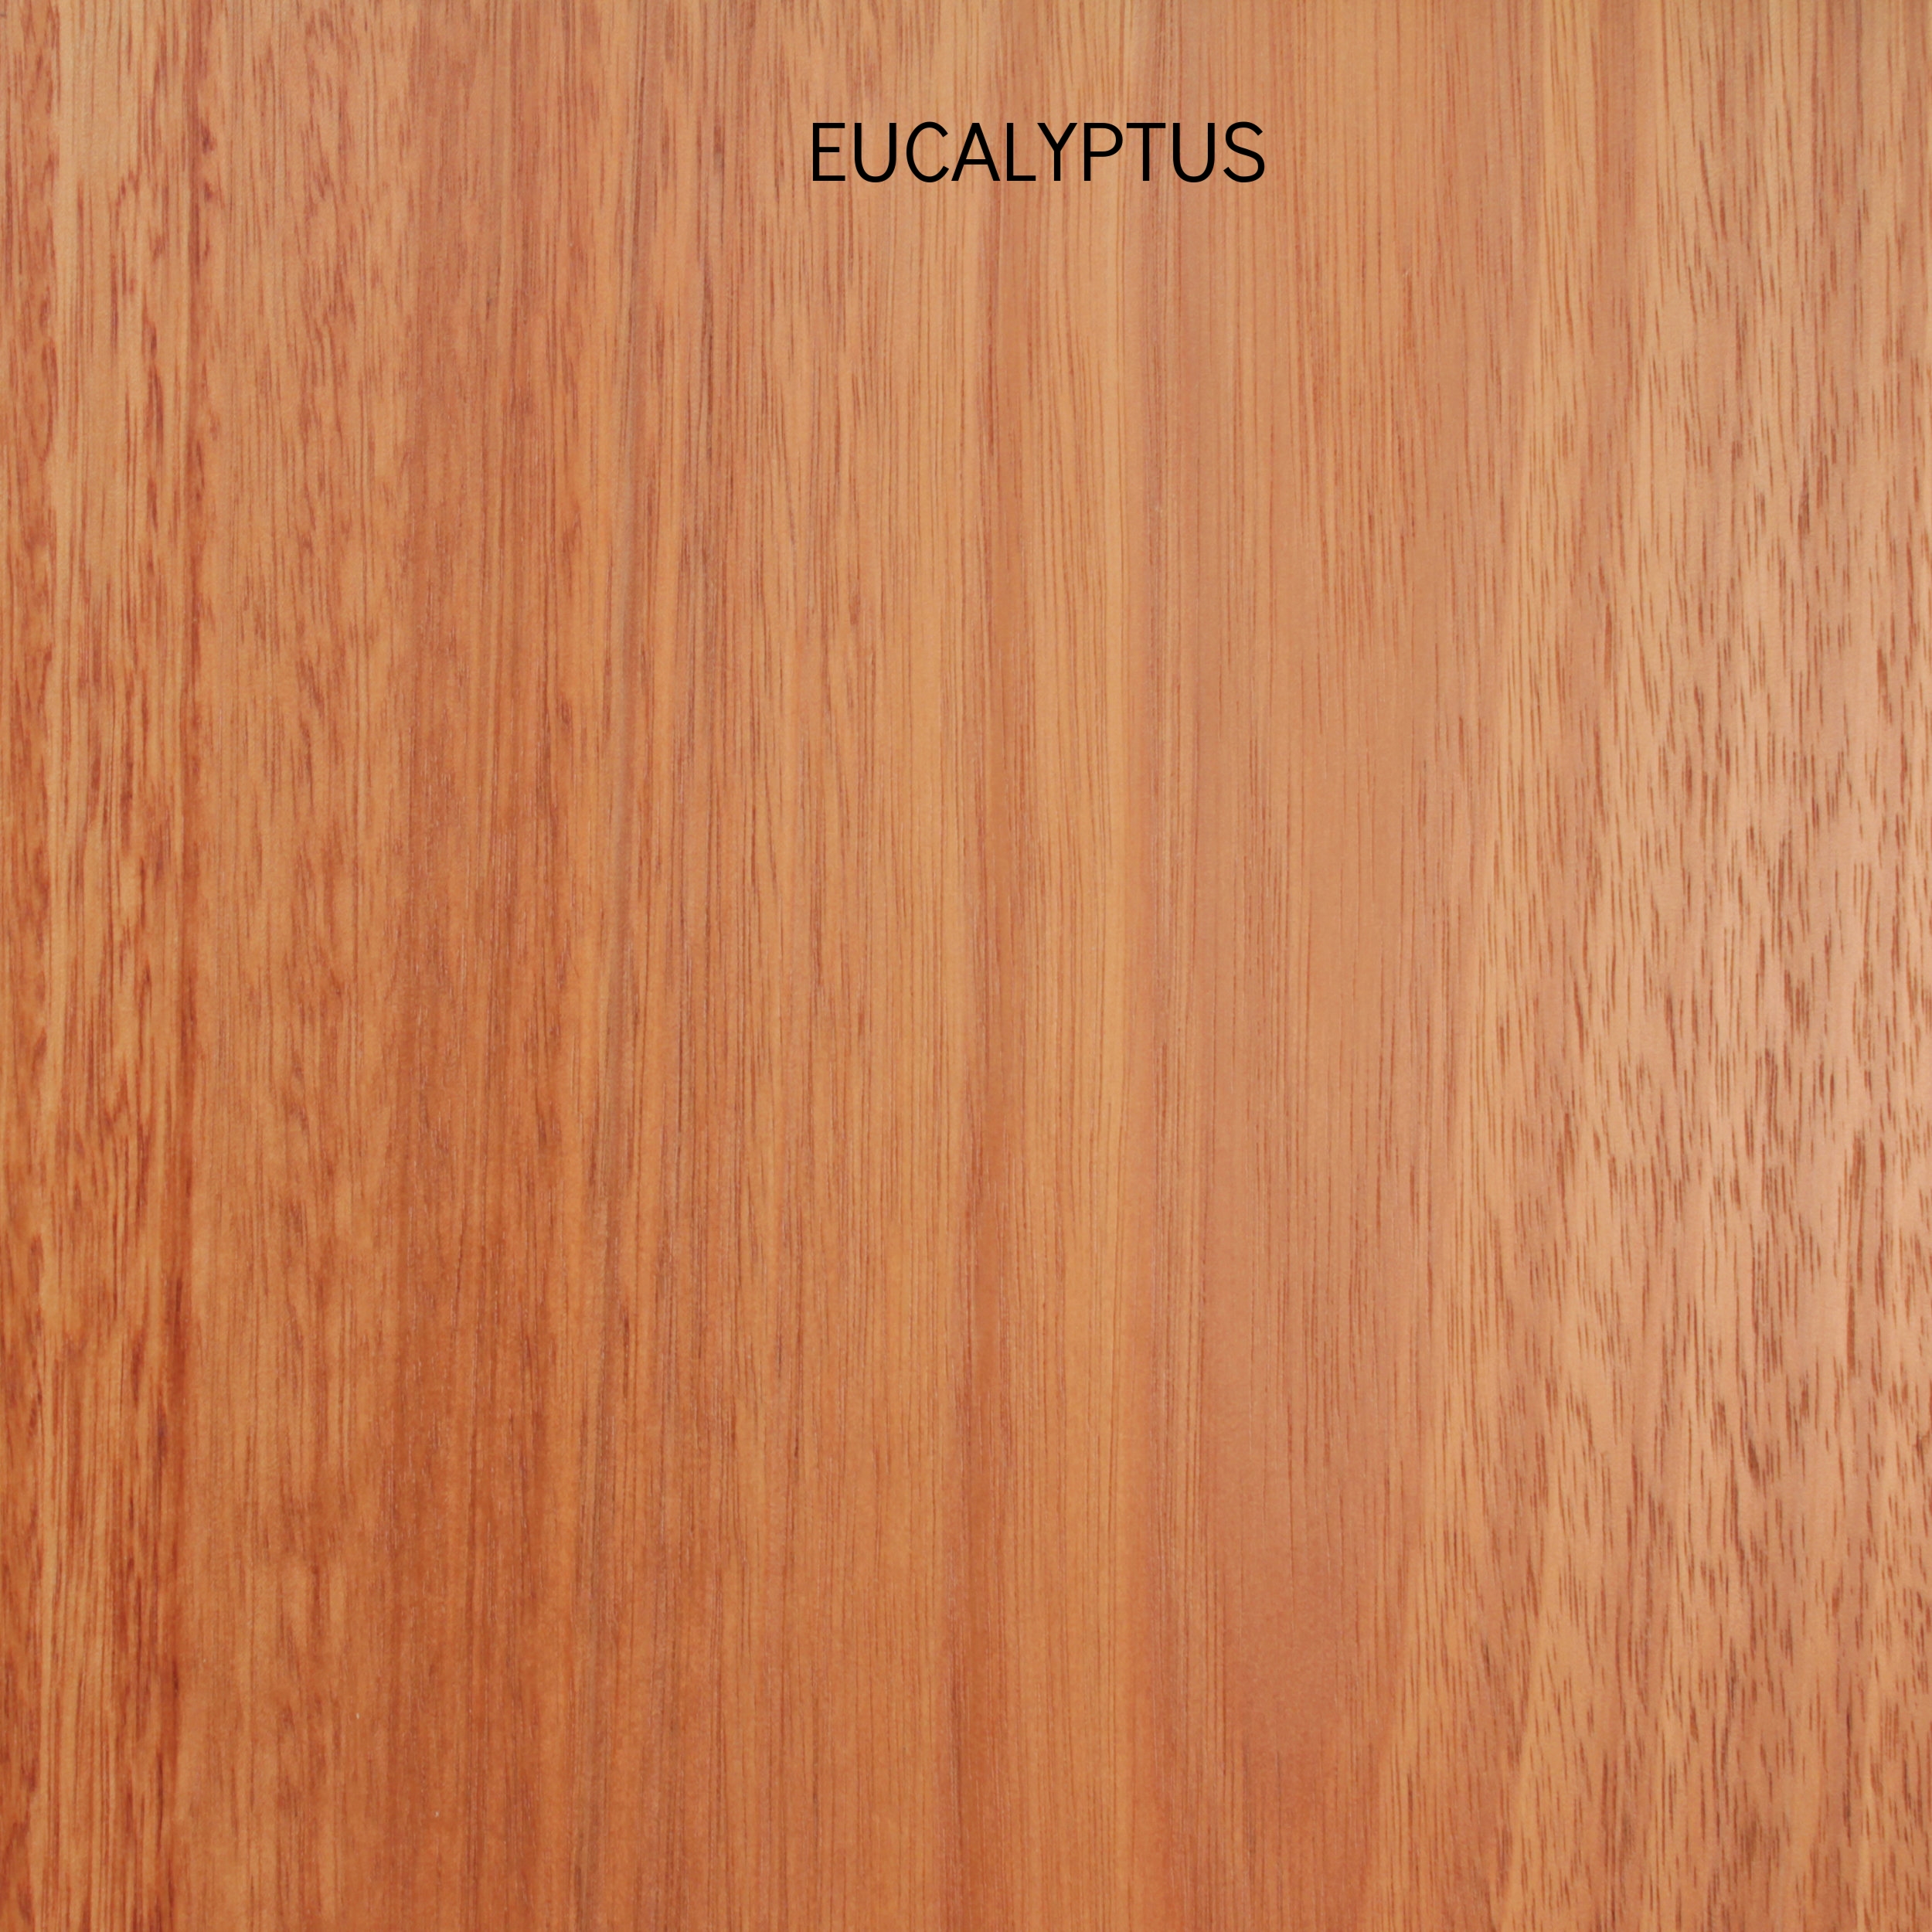 eucalyptus4.jpg